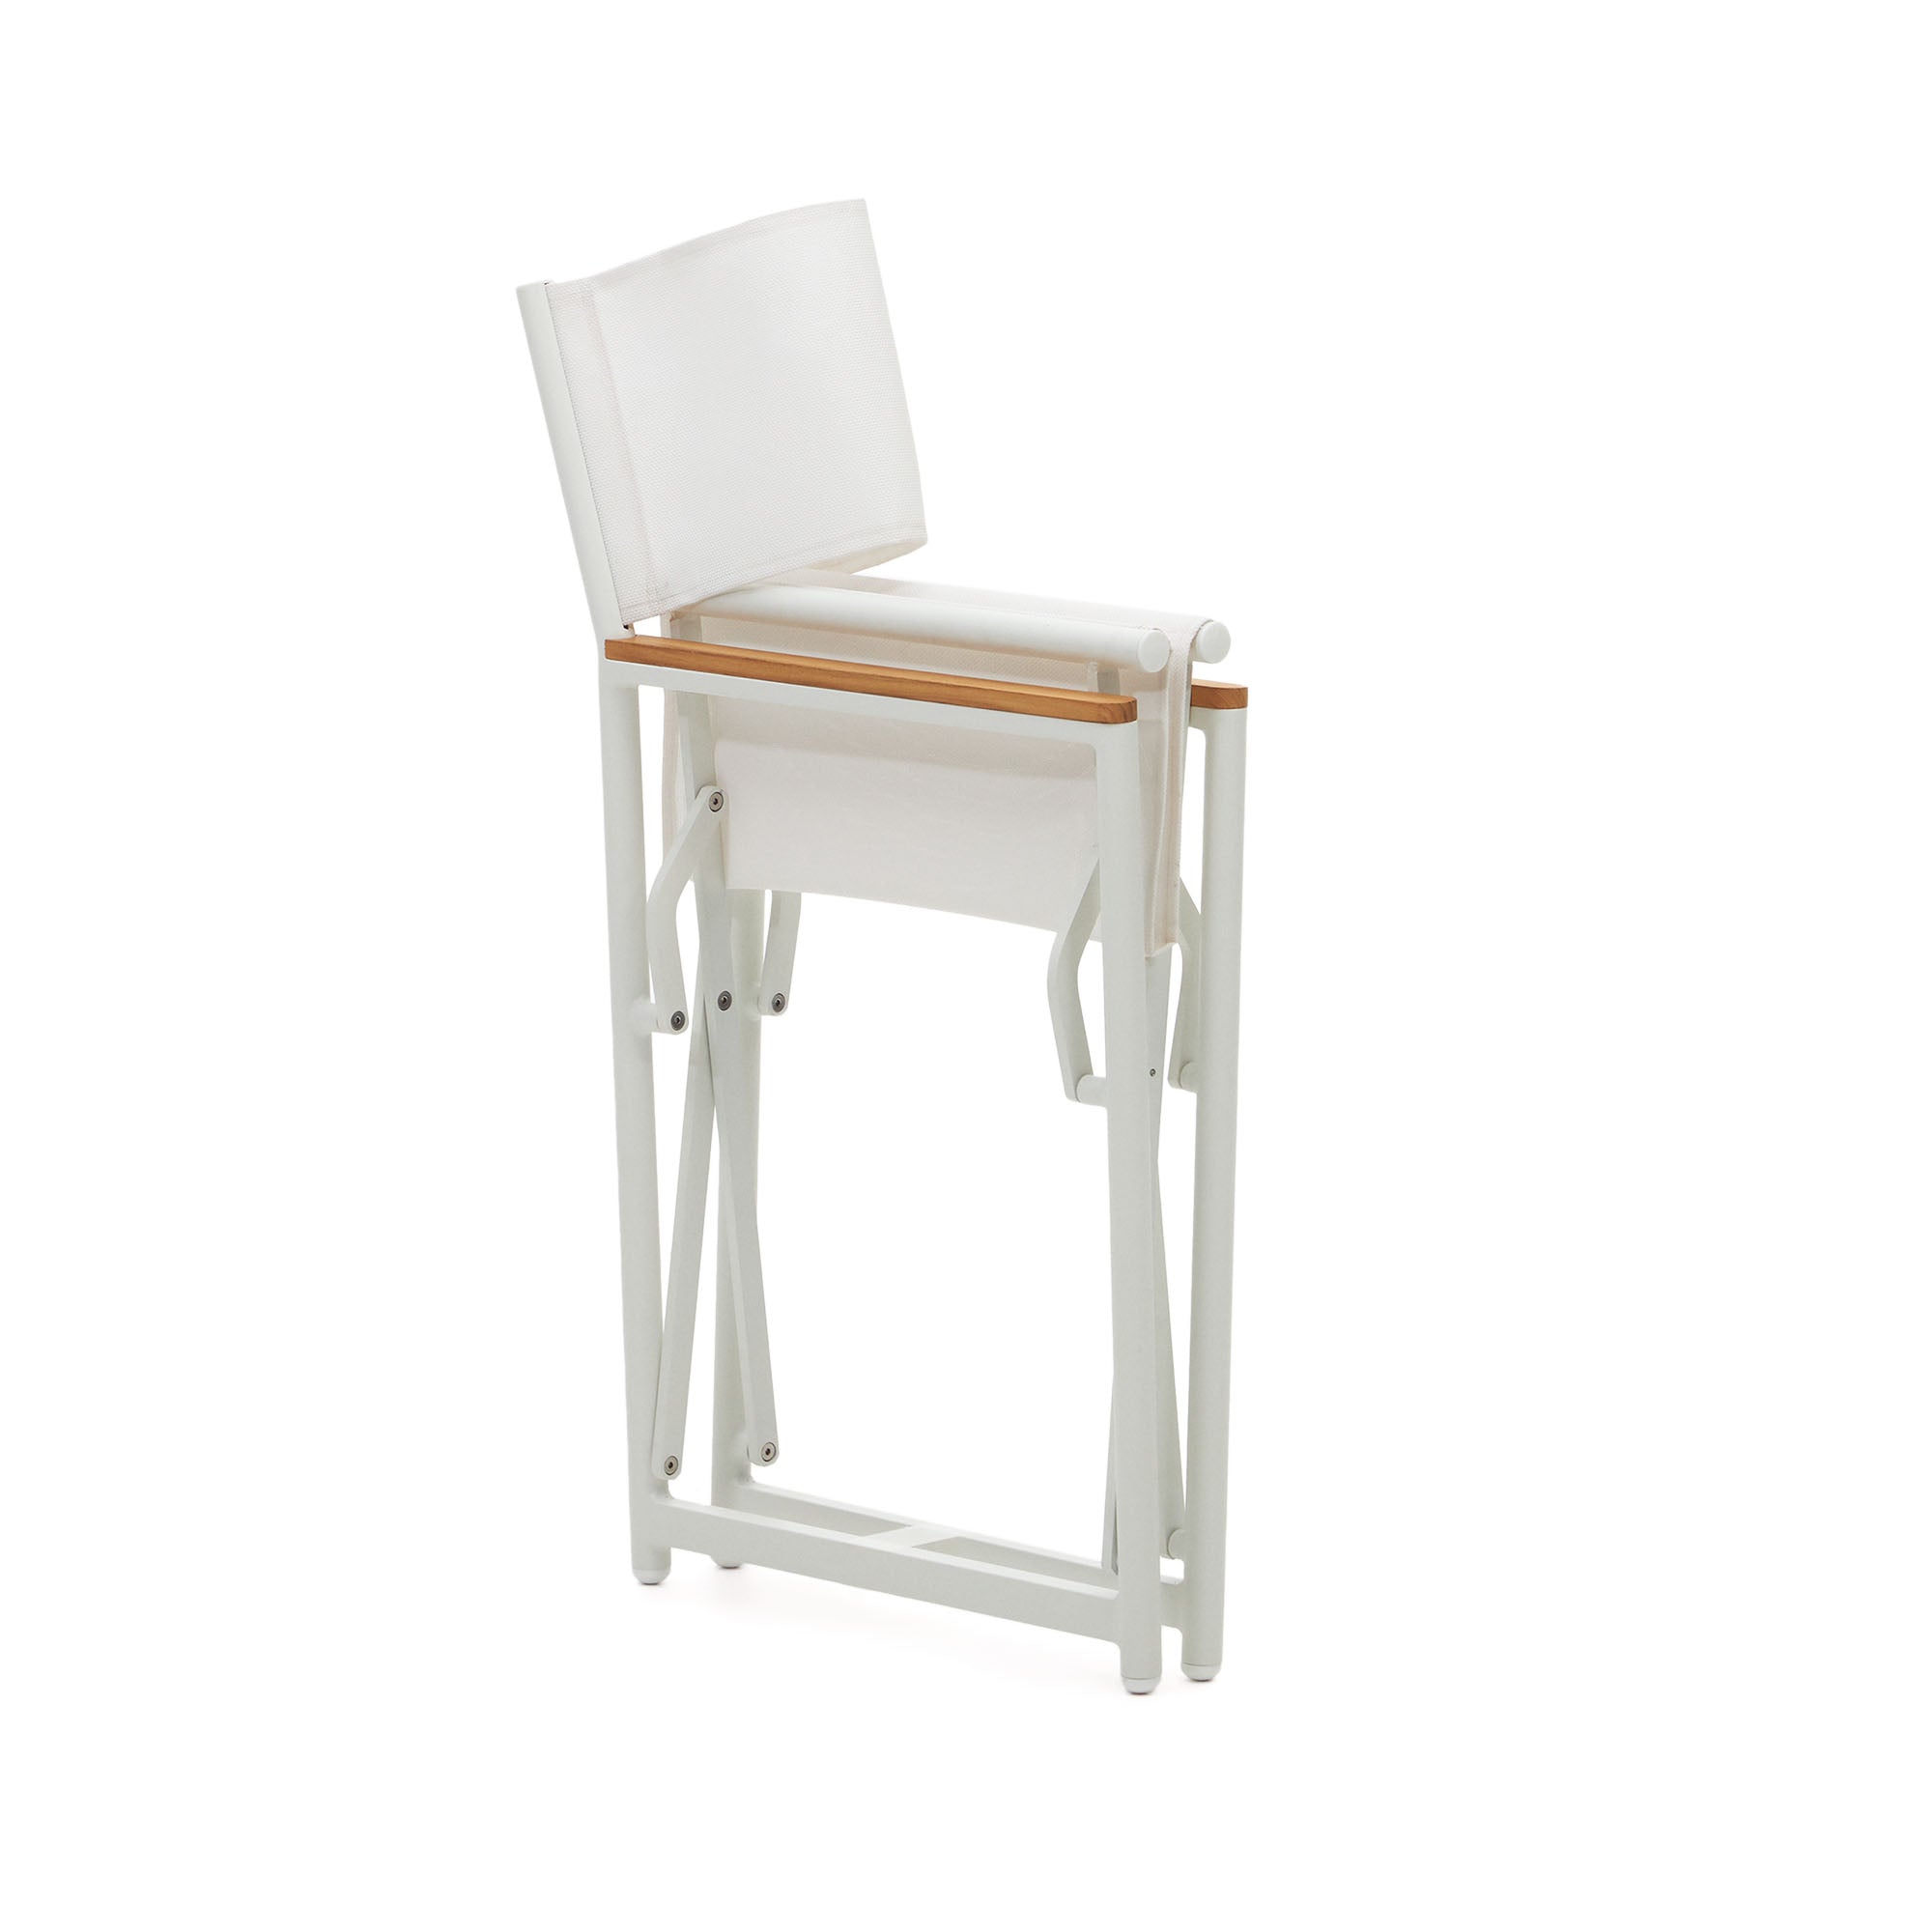 Llado fehér alumínium összecsukható szék tömör teakfa karfával 100% kültéri használatra alkalmas